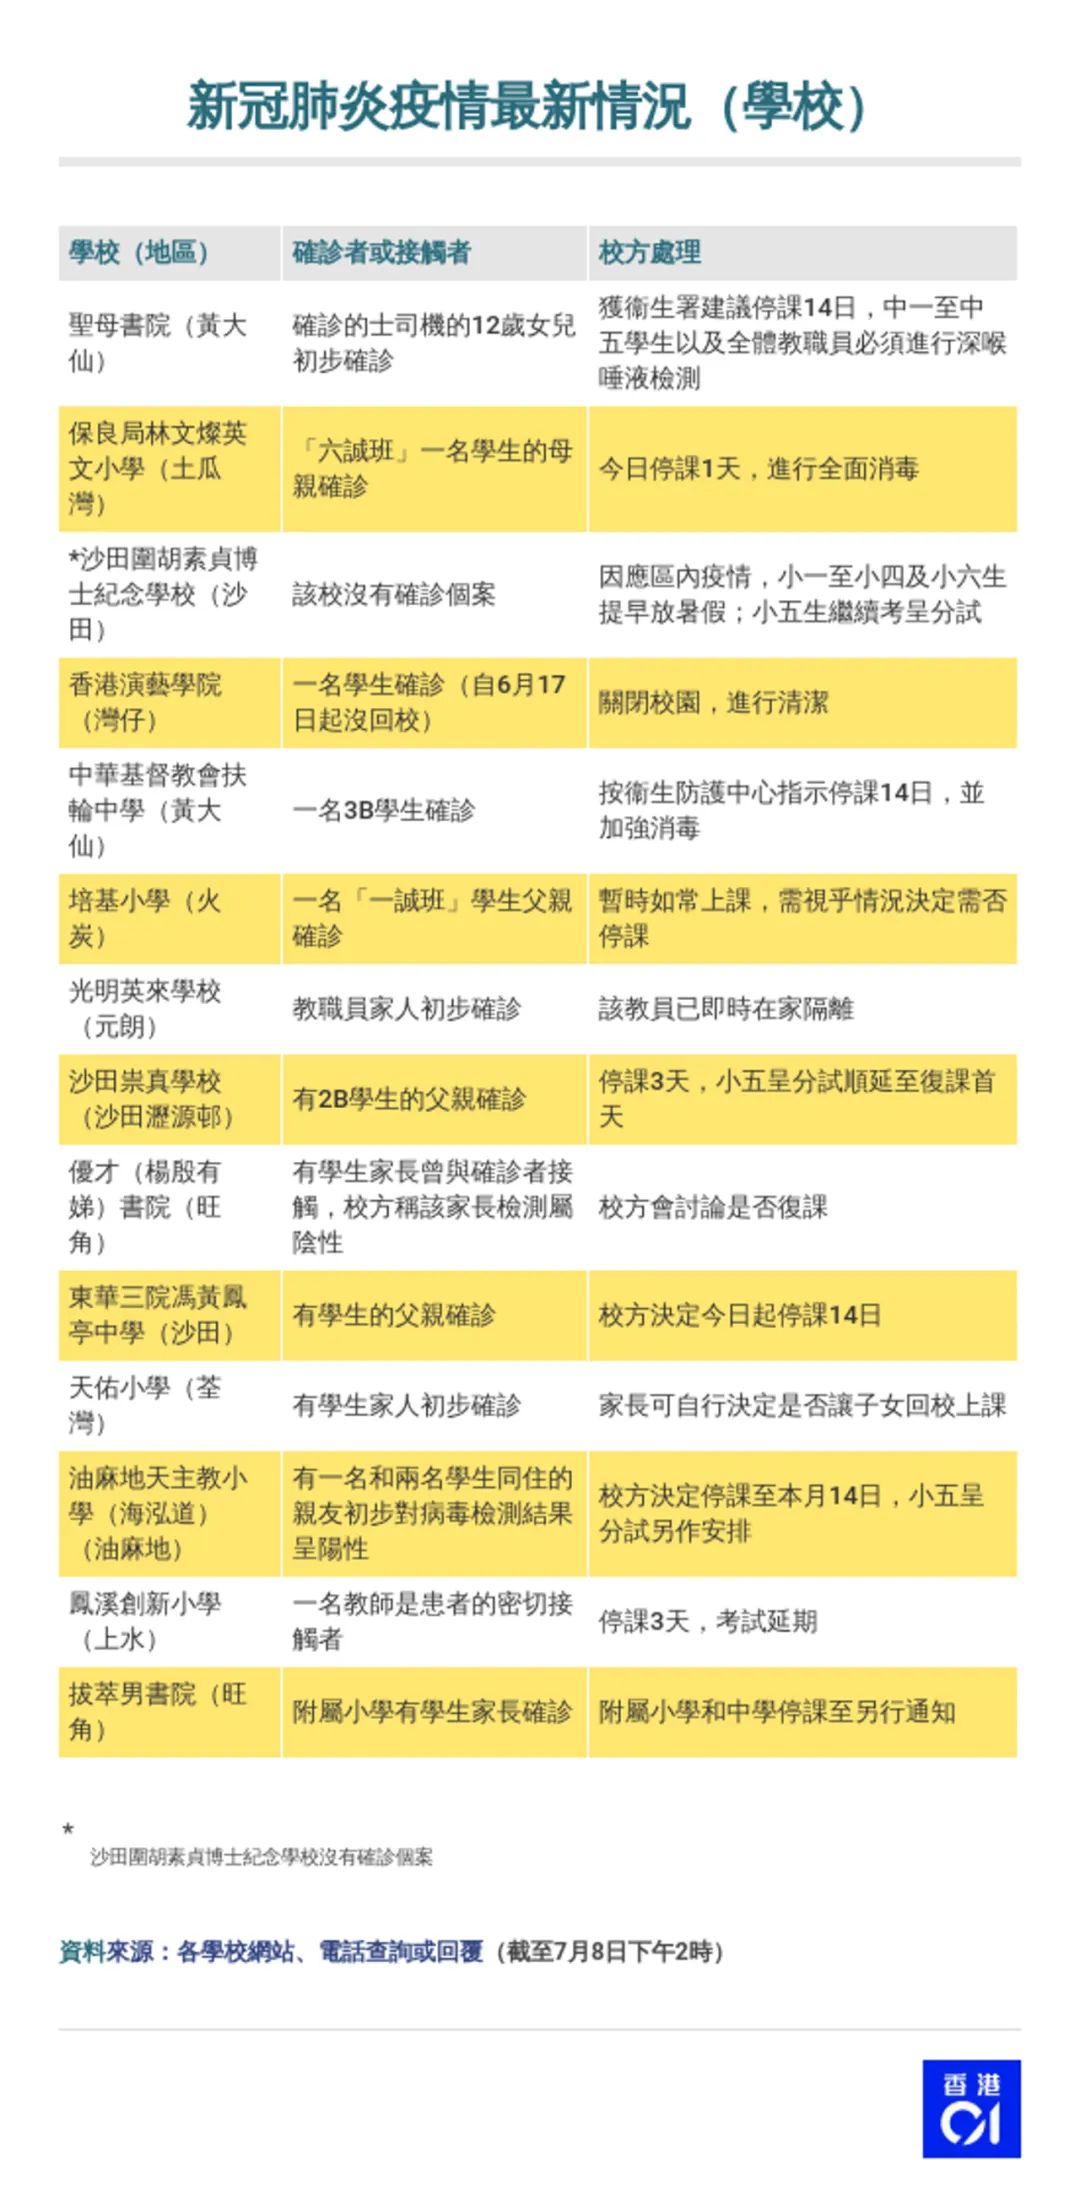 香港本地感染大爆发 入境检测收紧 14间学校急停课 发现香港 微信公众号文章阅读 Wemp